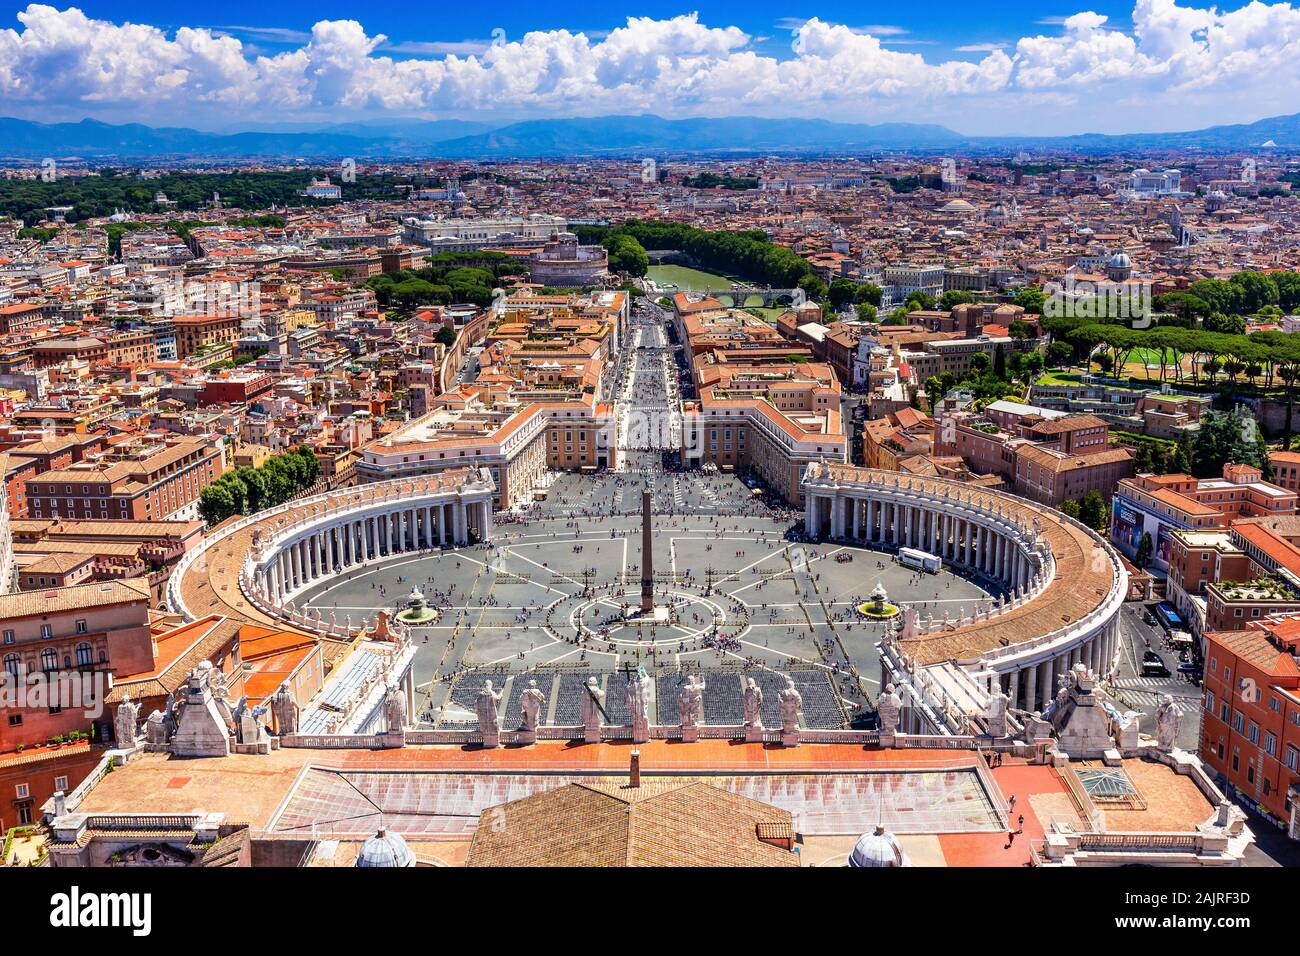 Rome, Italie. Célèbre la place Saint Pierre au Vatican et vue aérienne de la ville. Banque D'Images